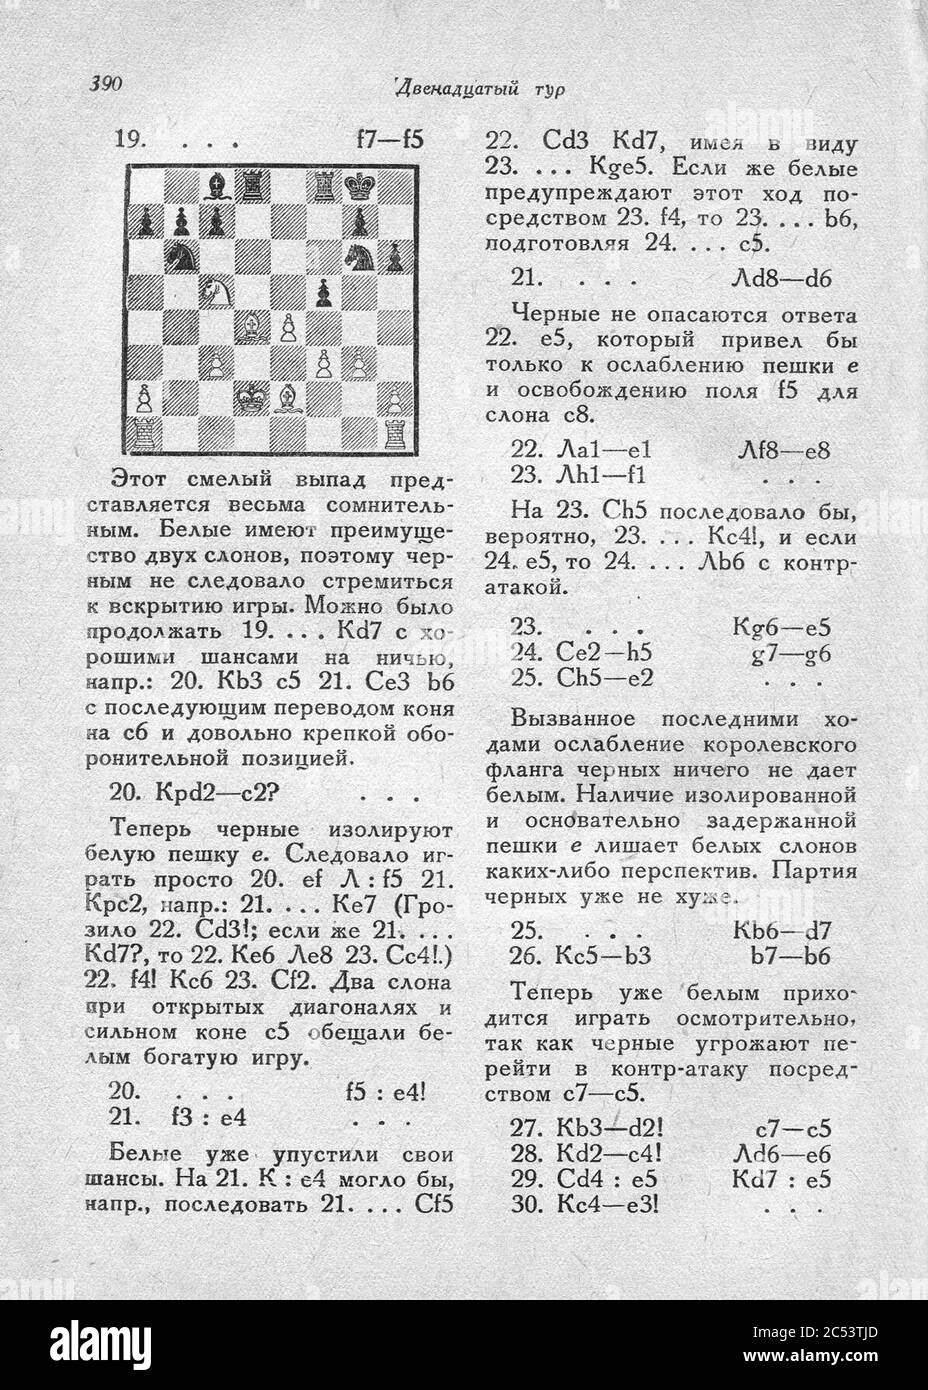 International chess tournament. 1935 year. img 393. Stock Photo